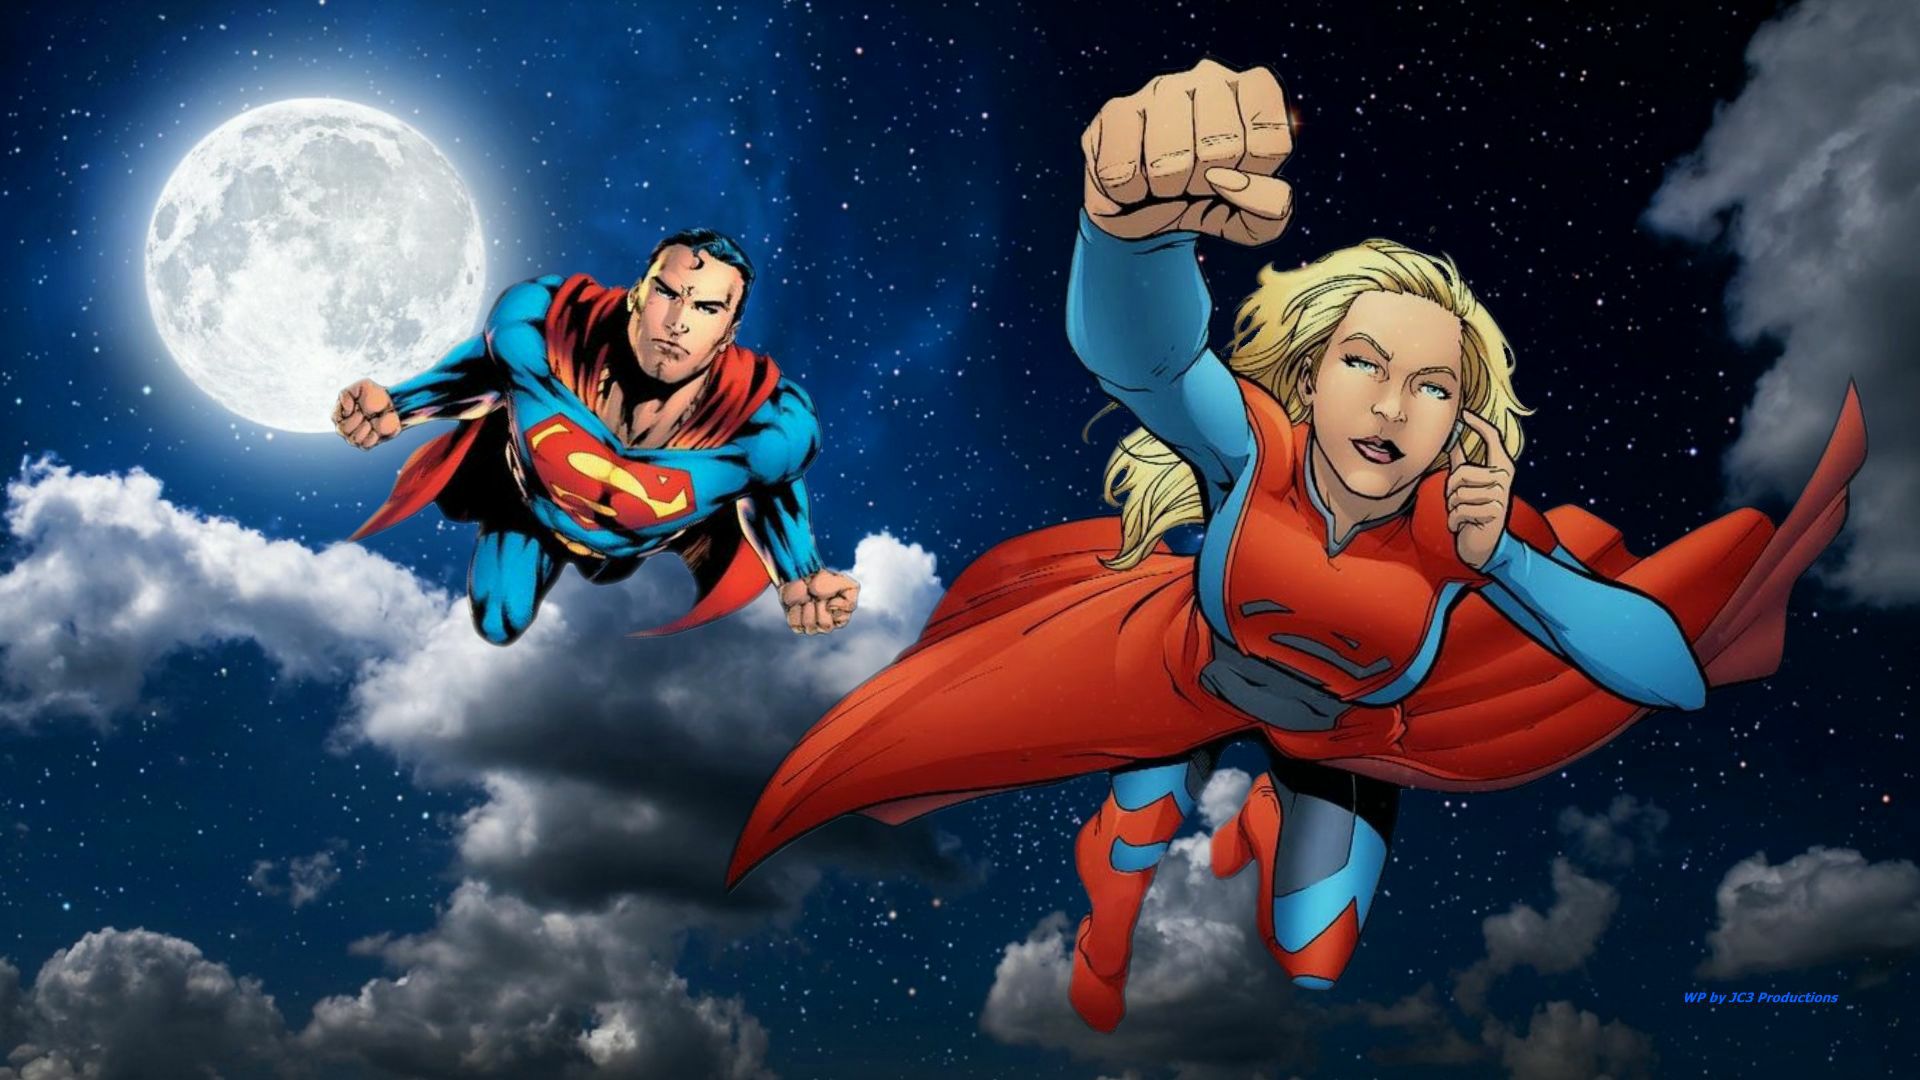 Supergirl & Superman Wallpaper - At Night 1 - DC Comics Wallpaper  (41107892) - Fanpop